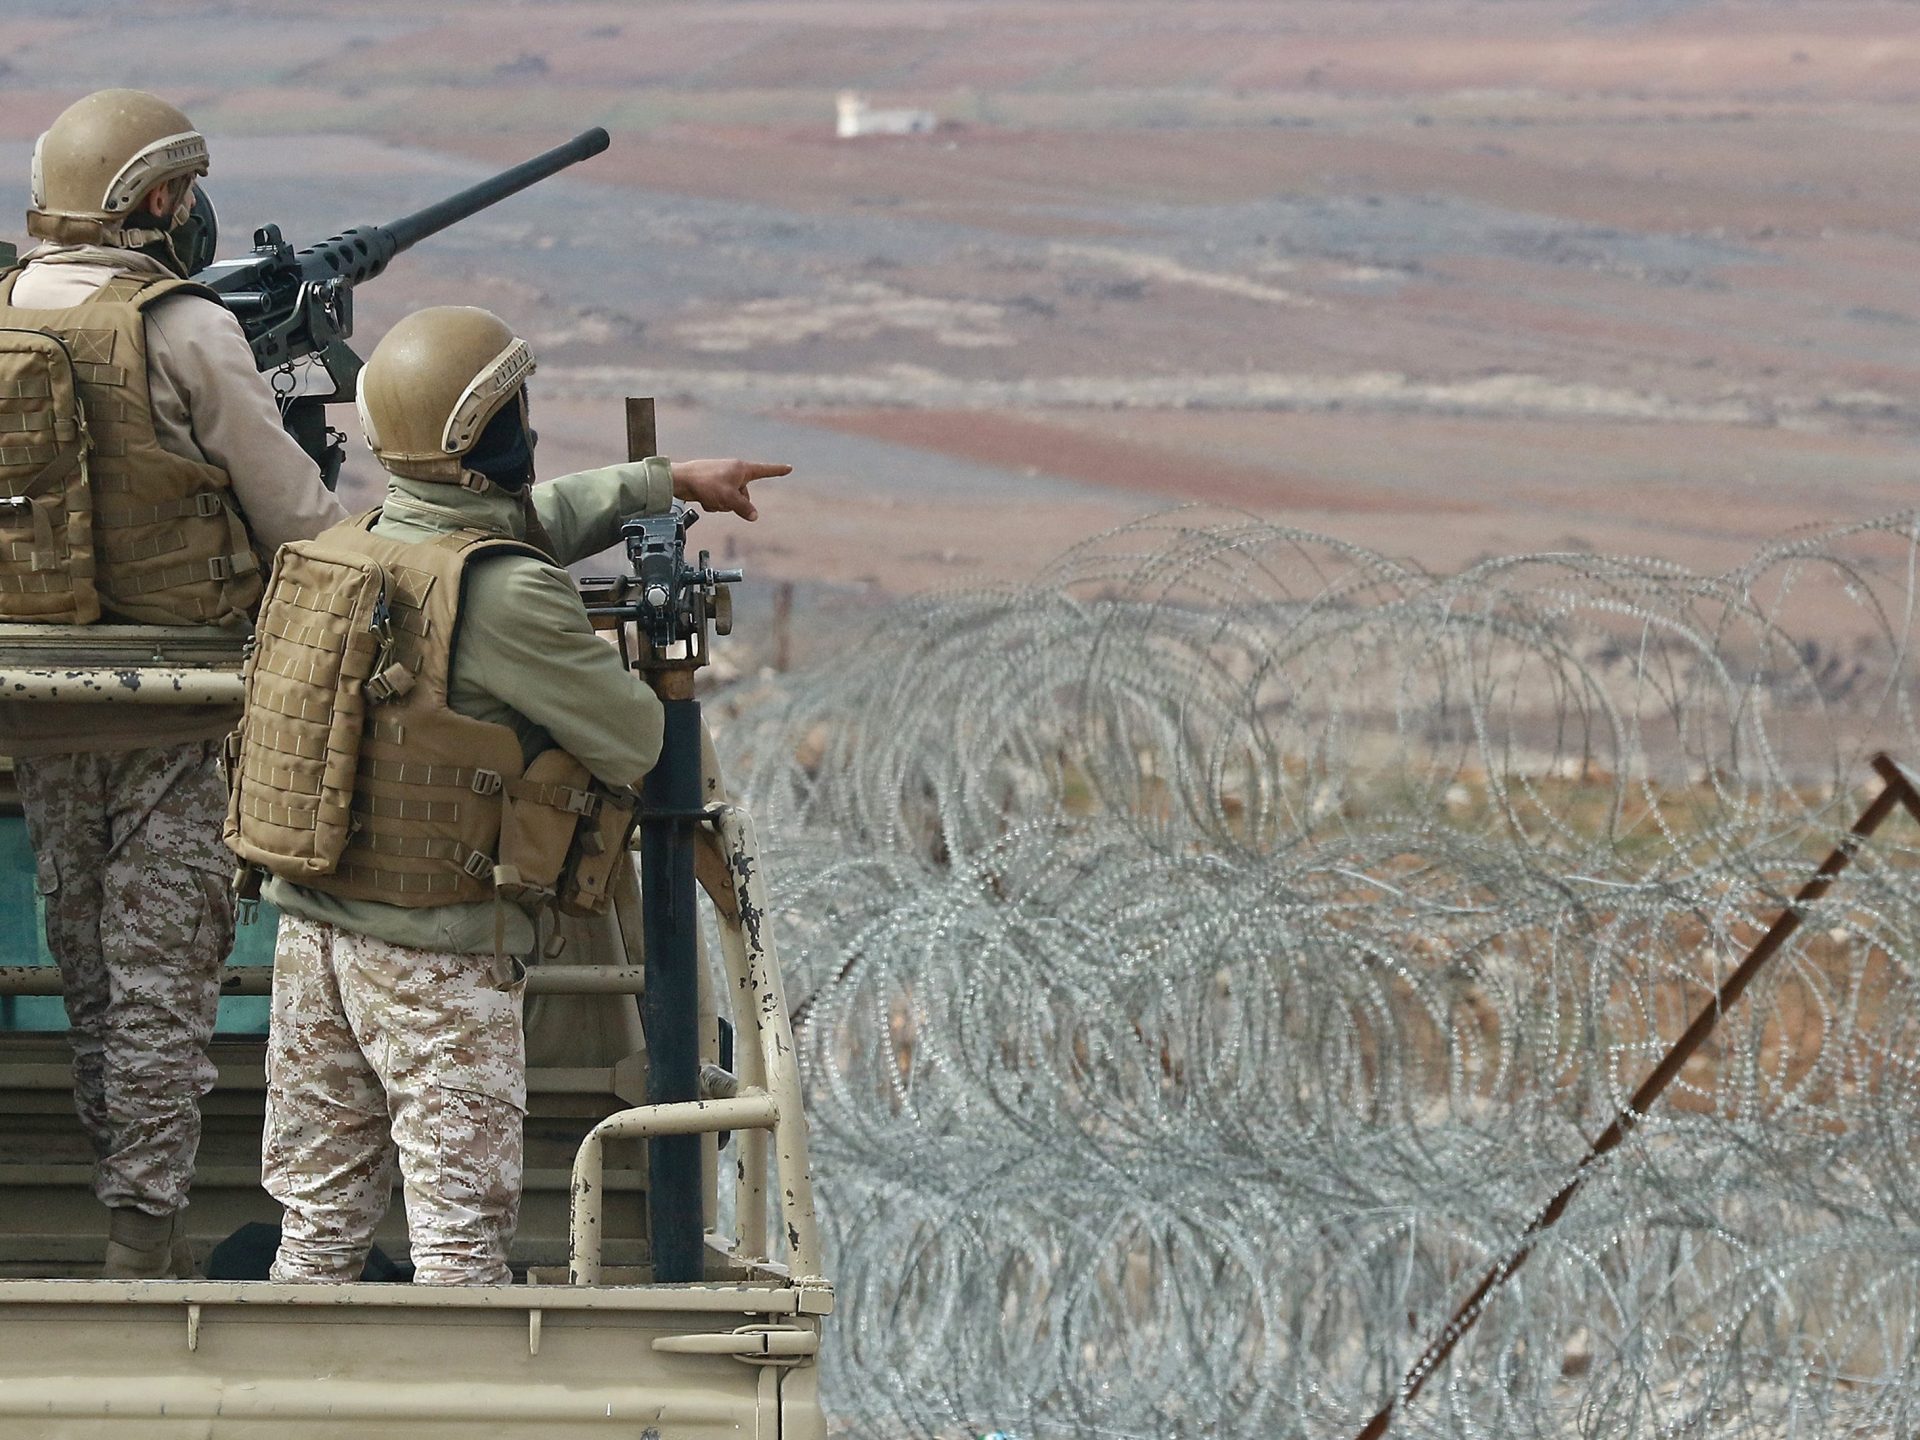 الأردن: إصابات بالجيش وإحباط تهريب أسلحة على الحدود مع سوريا | سياسة – البوكس نيوز